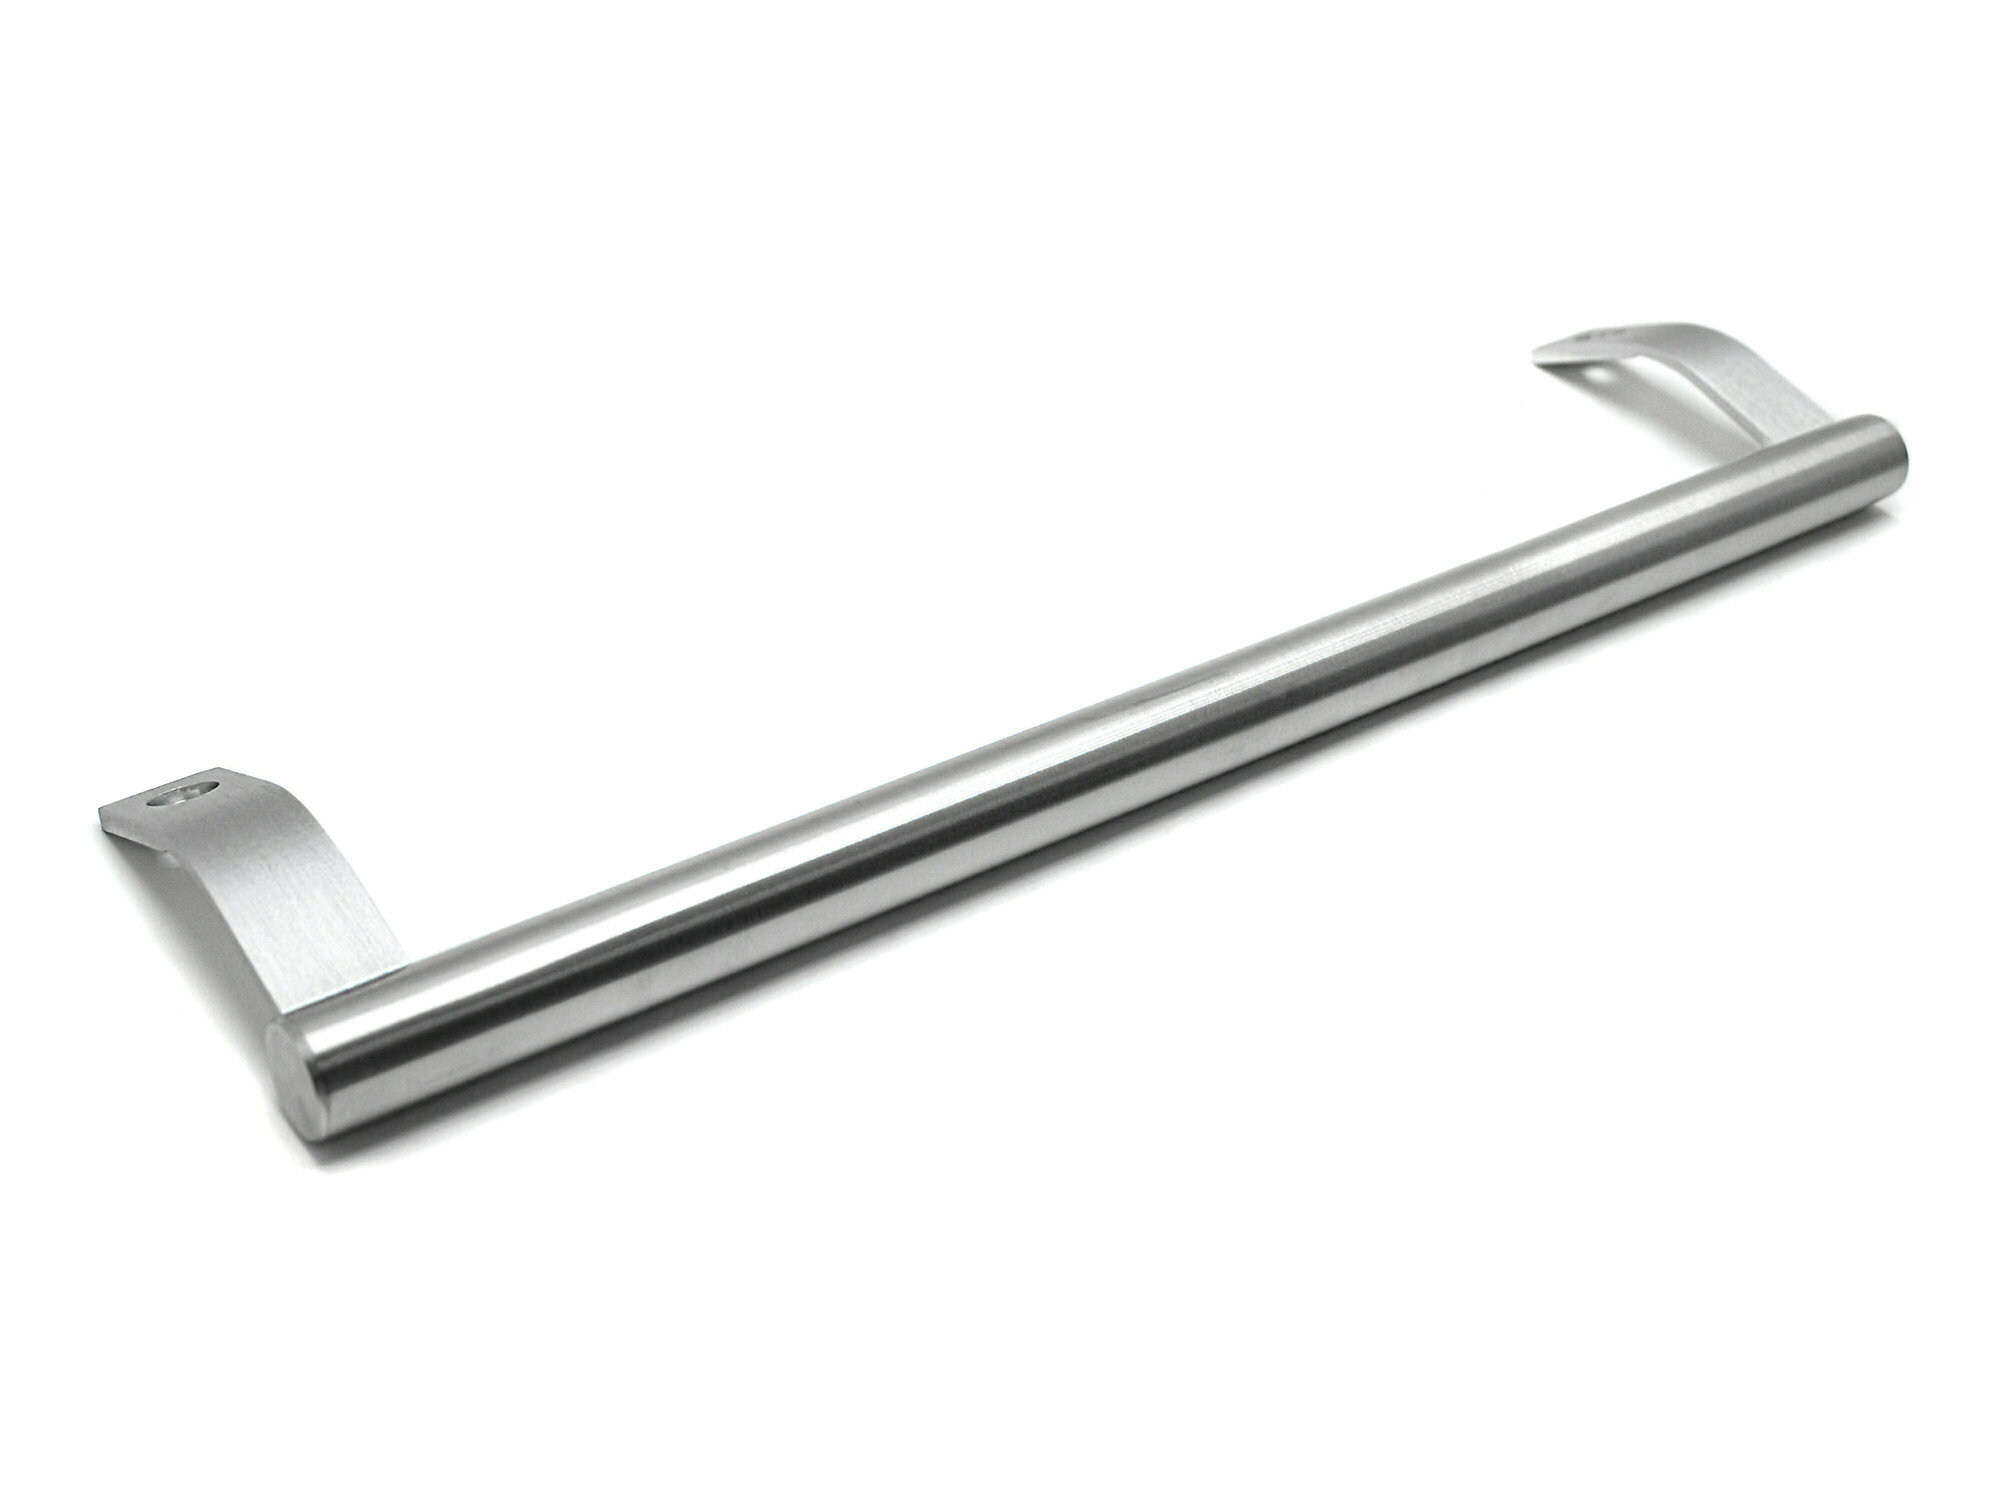 Ручка для холодильника Candy, серебро, длина 352 мм, 49016977